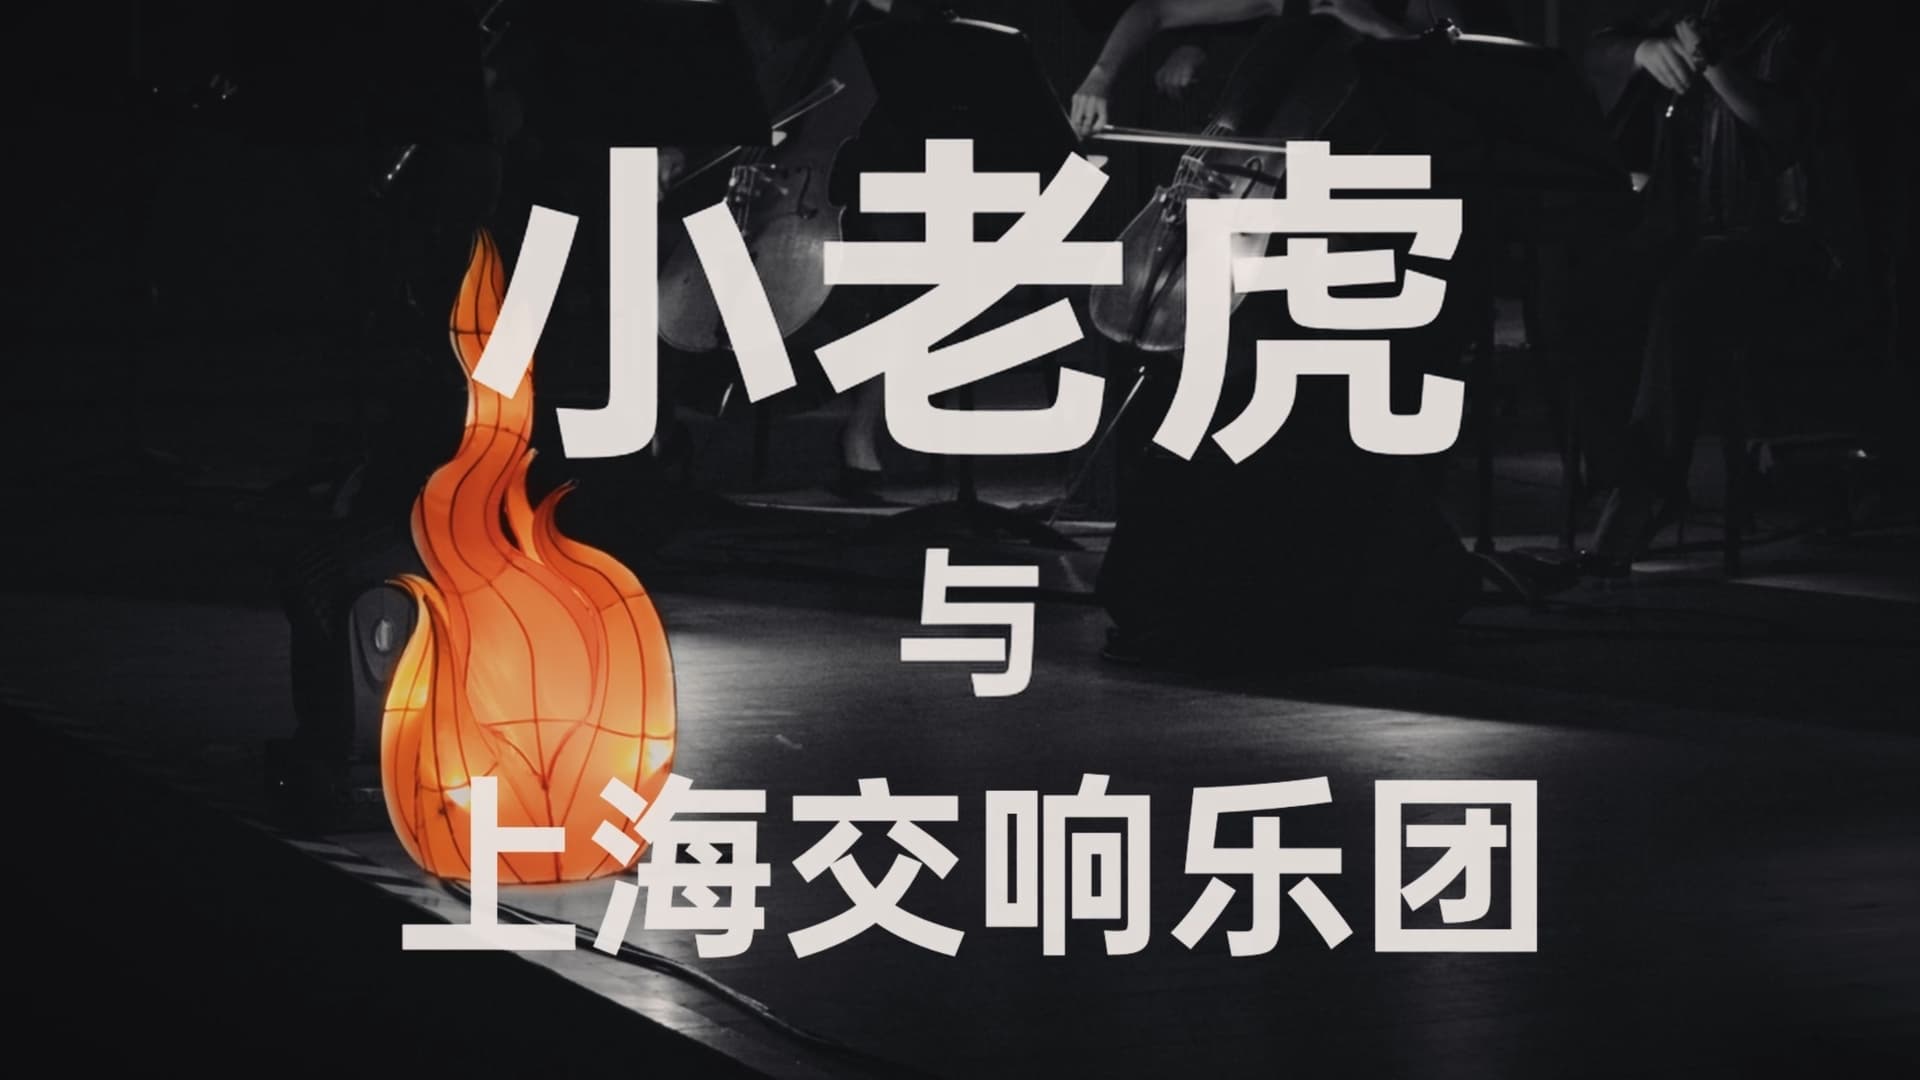 一把火 一张嘴 ：小老虎与上海交响乐团